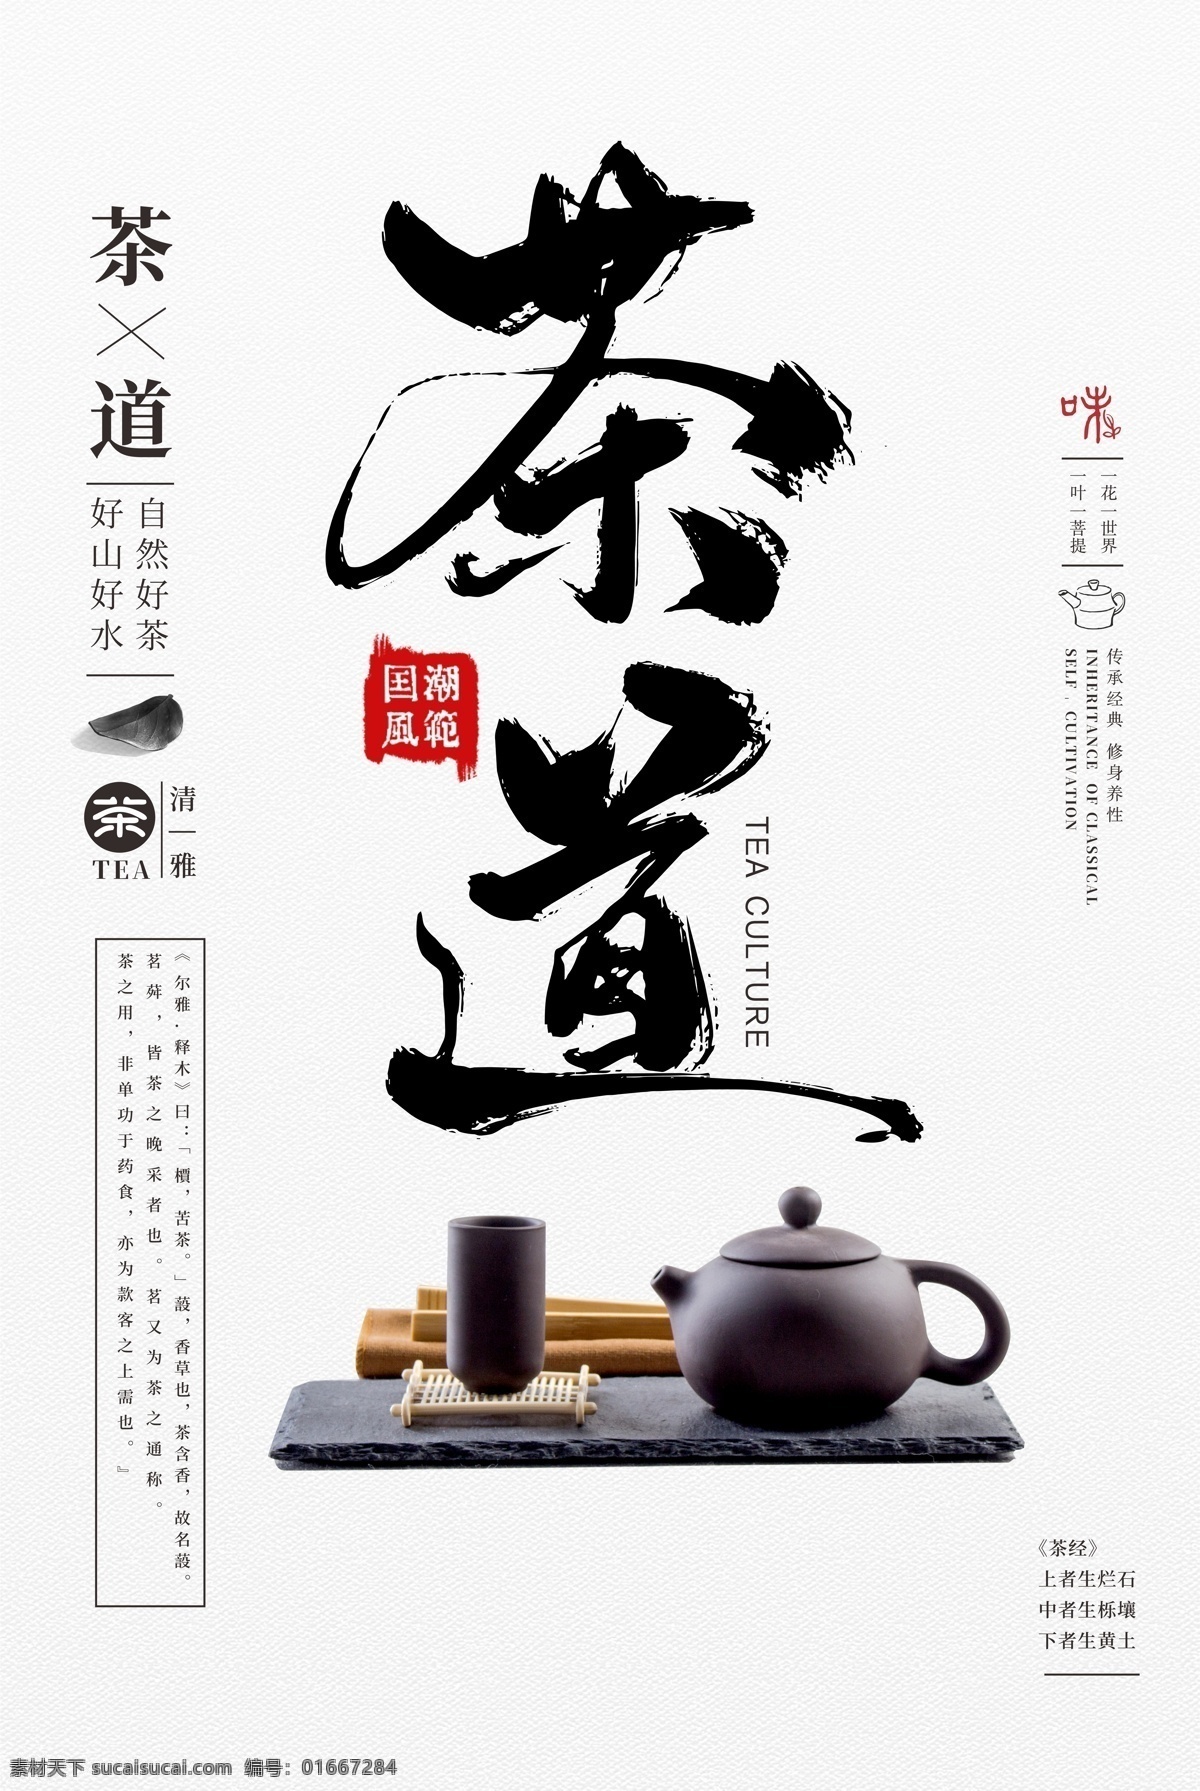 茶道 茶叶 宣传海报 饮品宣传海报 茶叶宣传 茶 茶具 茶艺 茶文化 海报